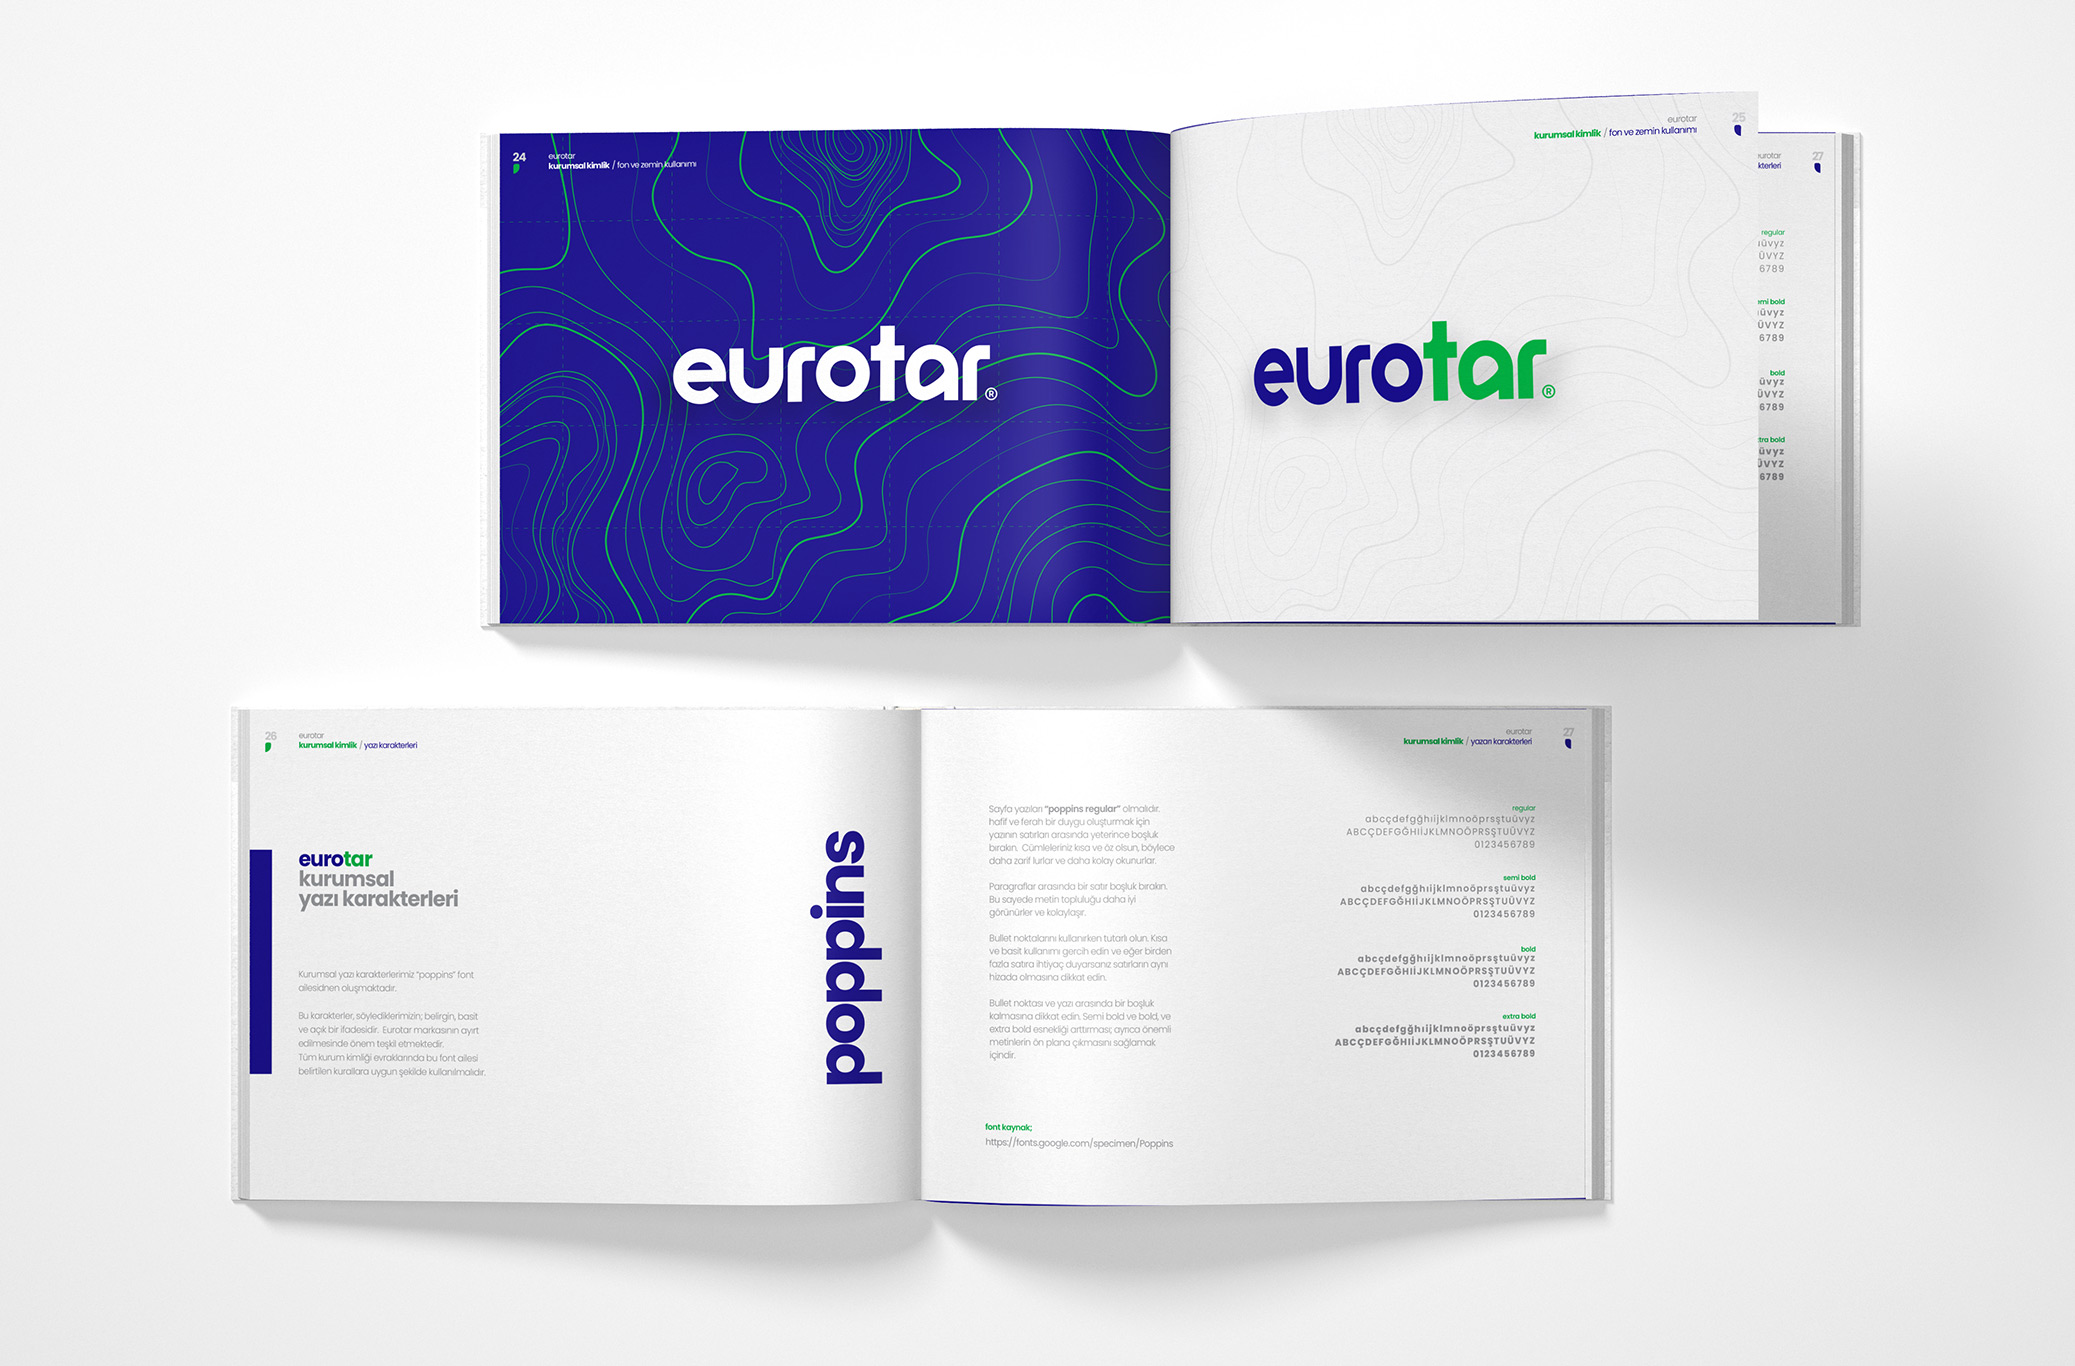 Eurotar Kurumsal Kimlik Tasarım / Fon ve Zemin Kullanımı